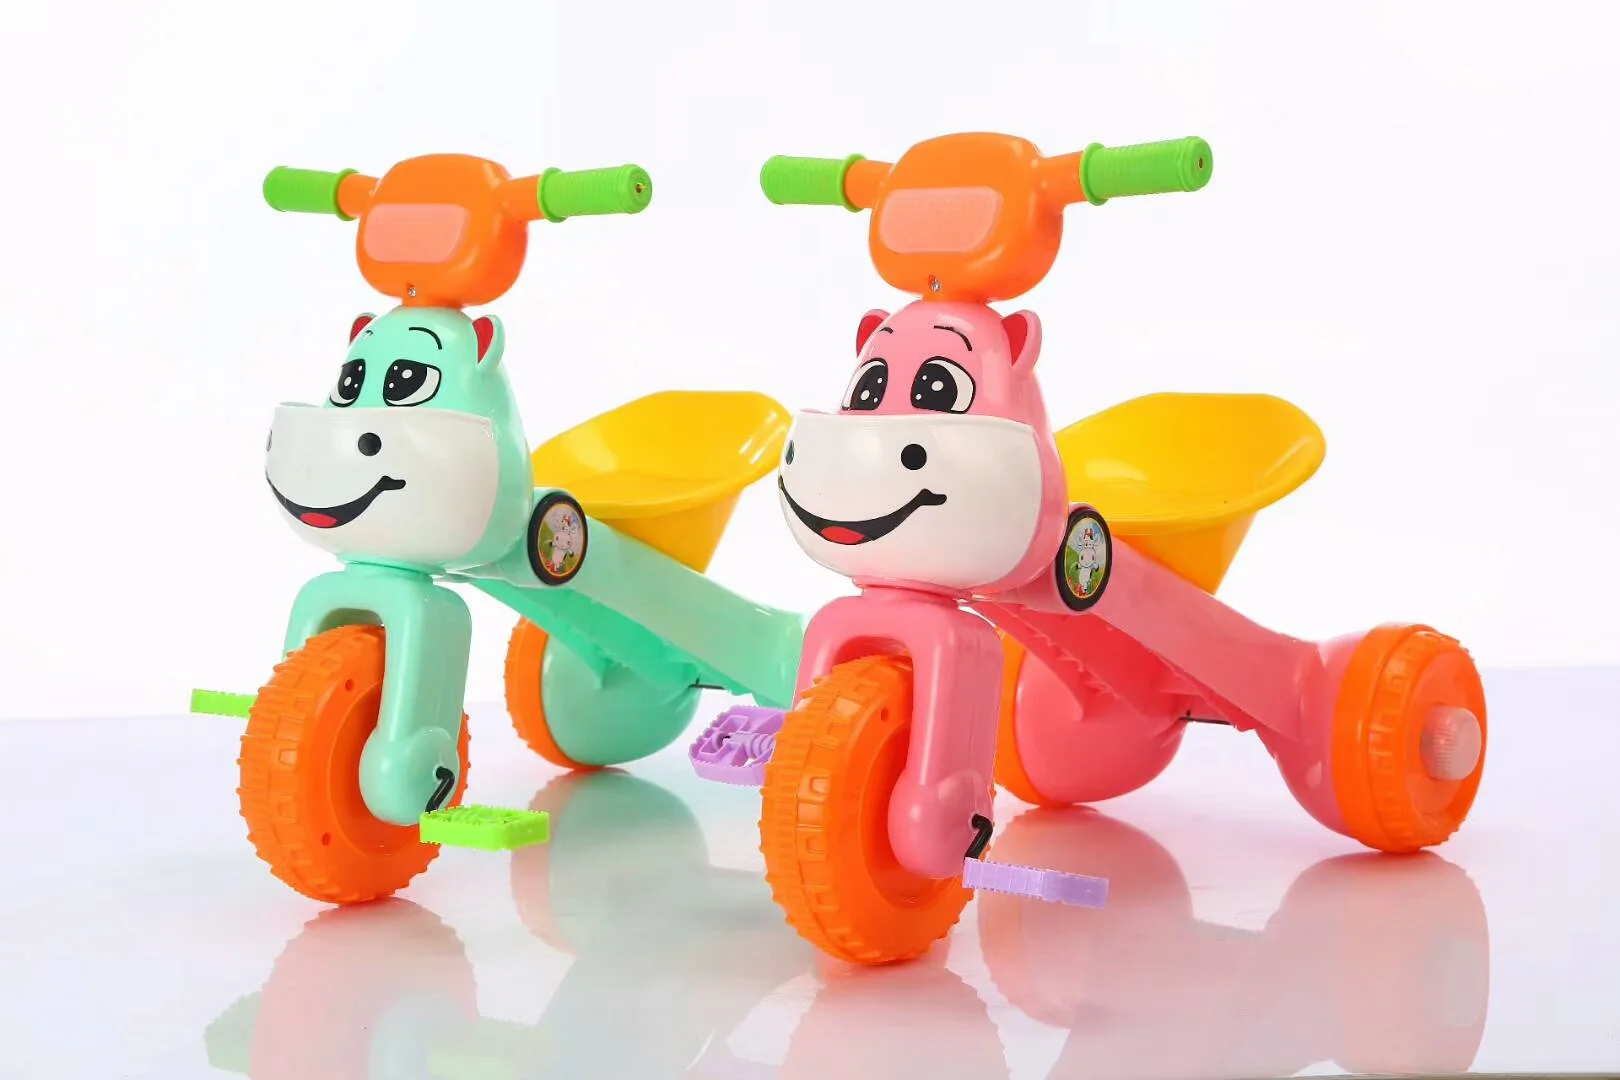 Мультяшный детский трехколесный велосипед, детский велосипед, игрушечная тележка, складные музыкальные огни, ходунки для малышей, игрушечный автомобиль, От 1 до 6 лет